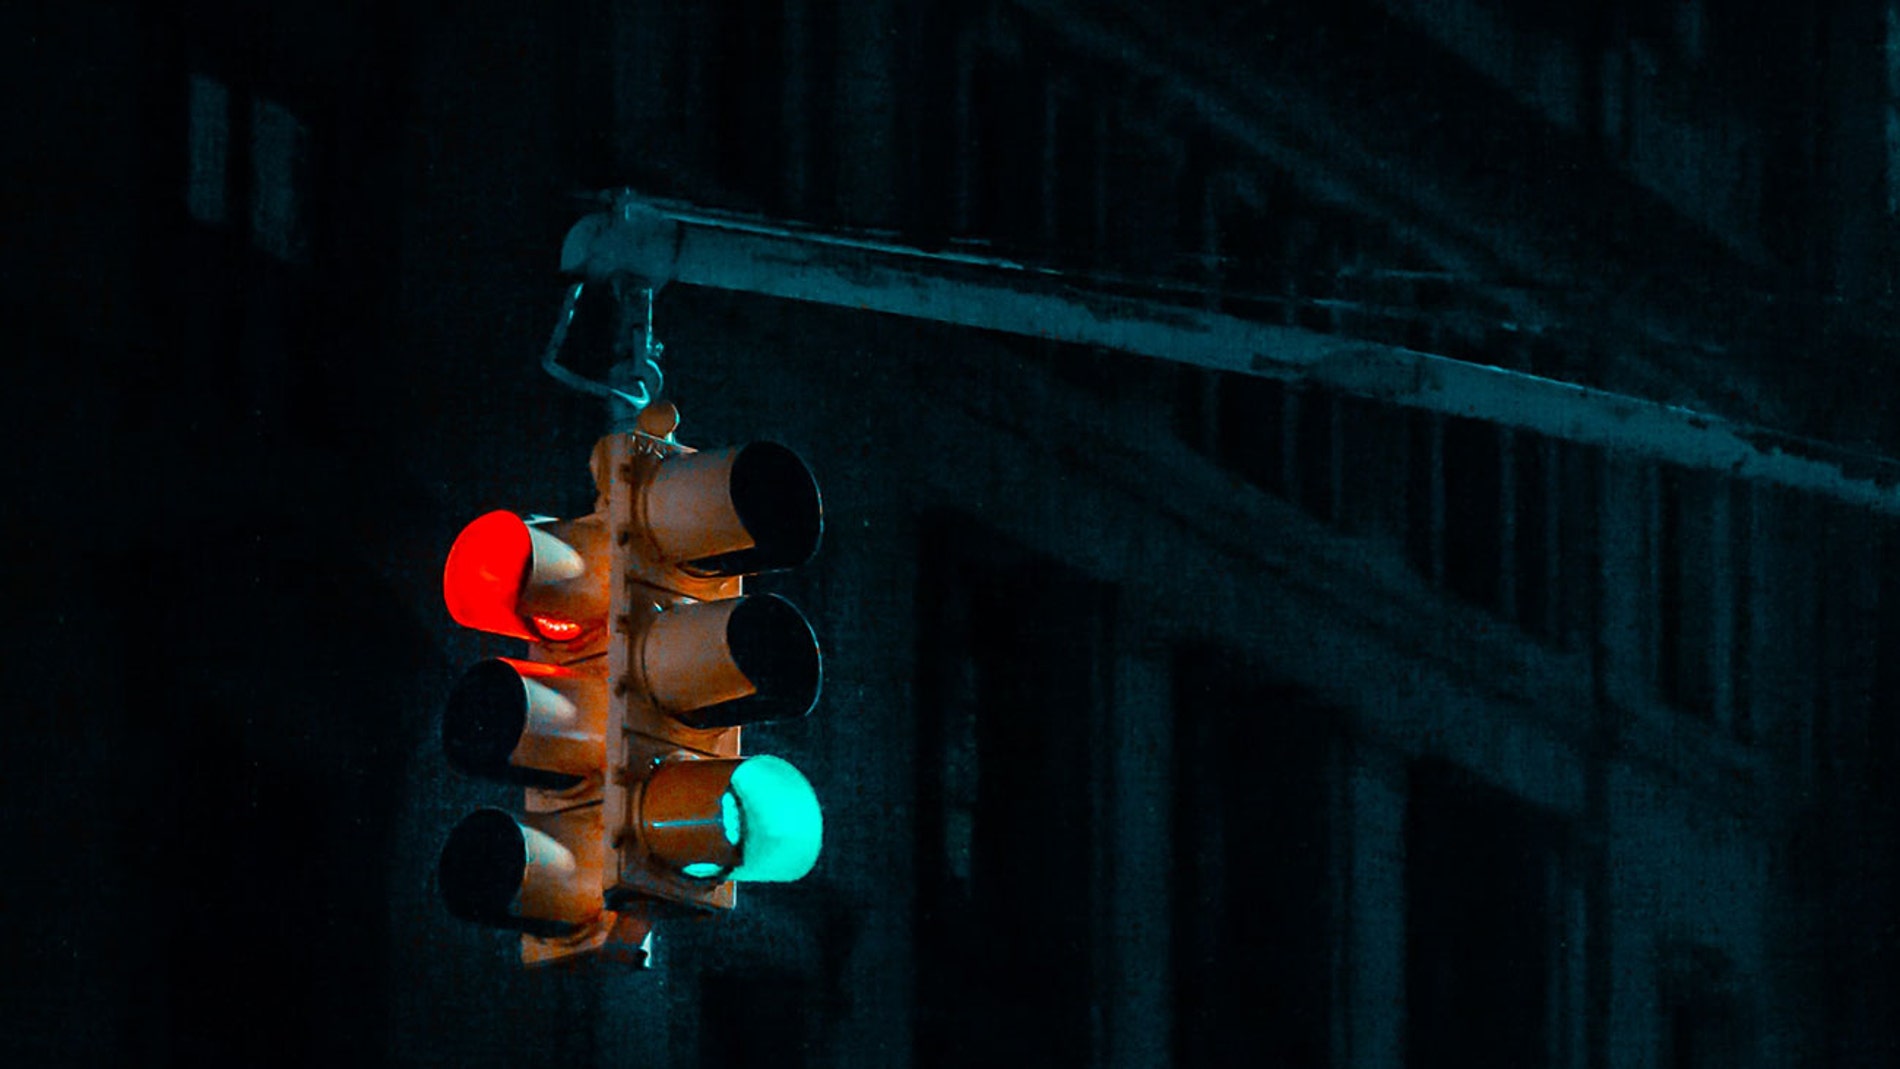 Un semáforo